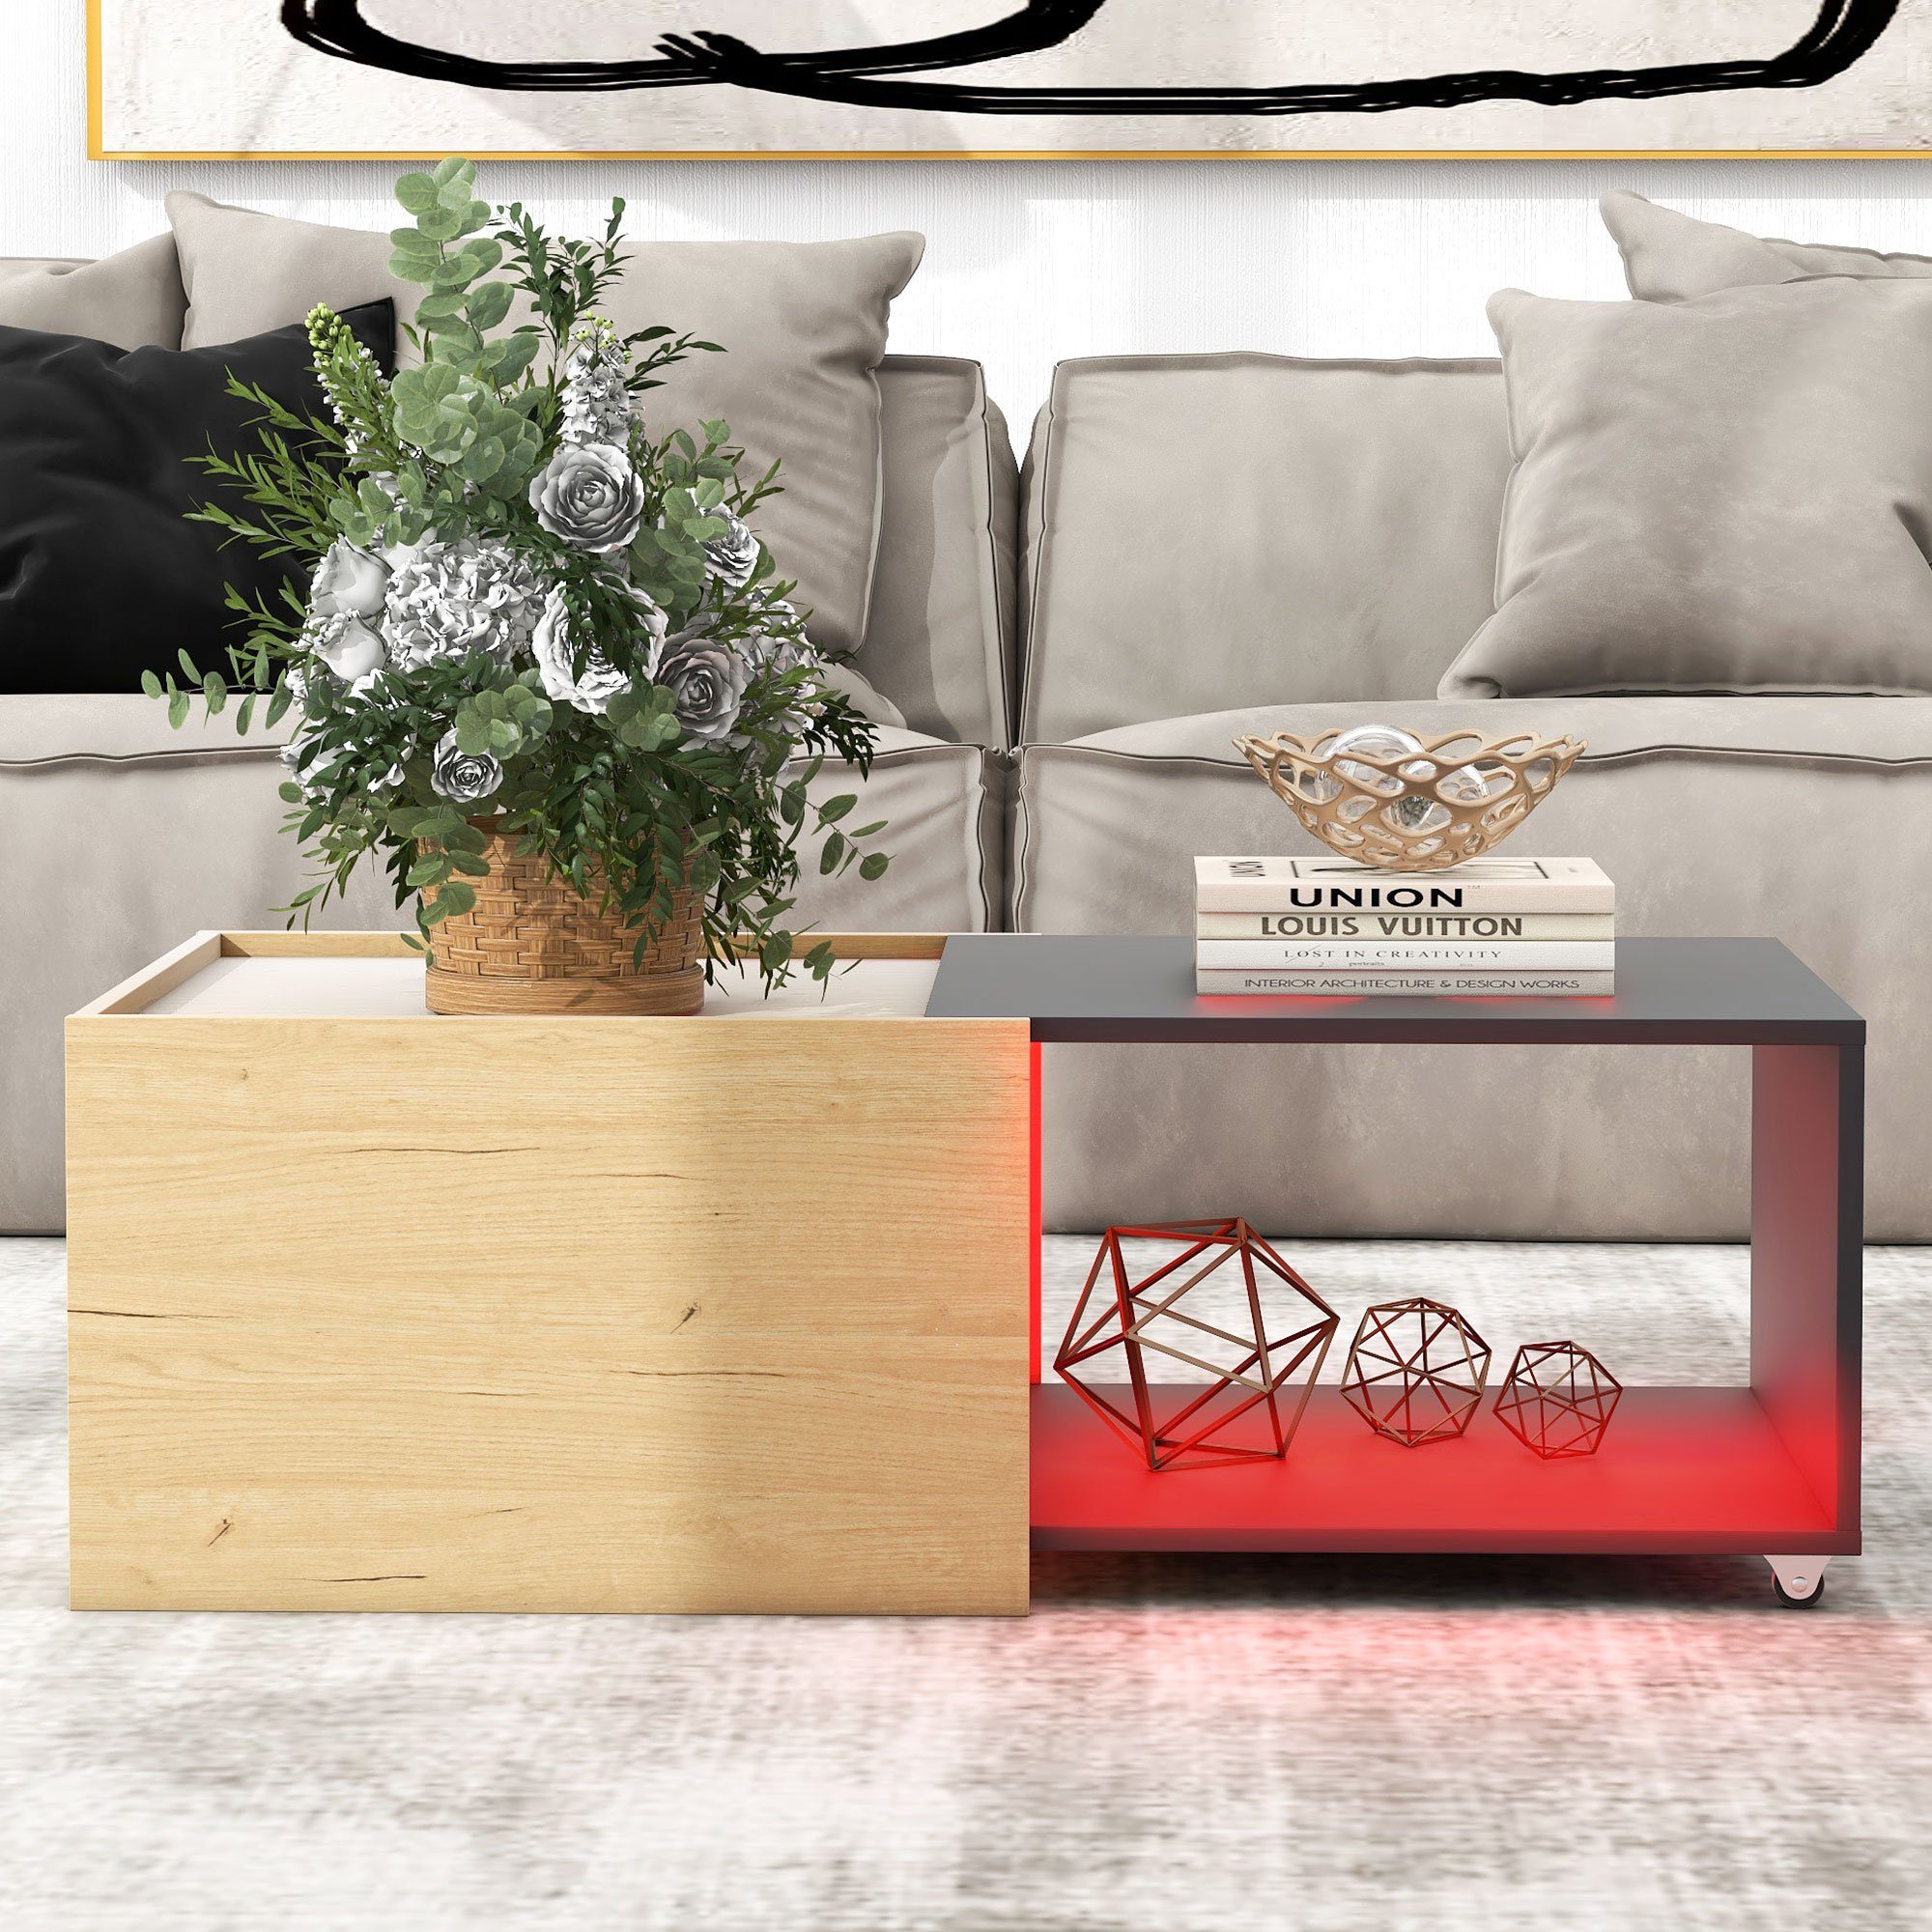 OKWISH Couchtisch Wohnzimmertisch mit ausziehbarem (Ausziehbares und Tischplatte Flexibilität Design), Spleißdesign Mobilität Zweifarbiges